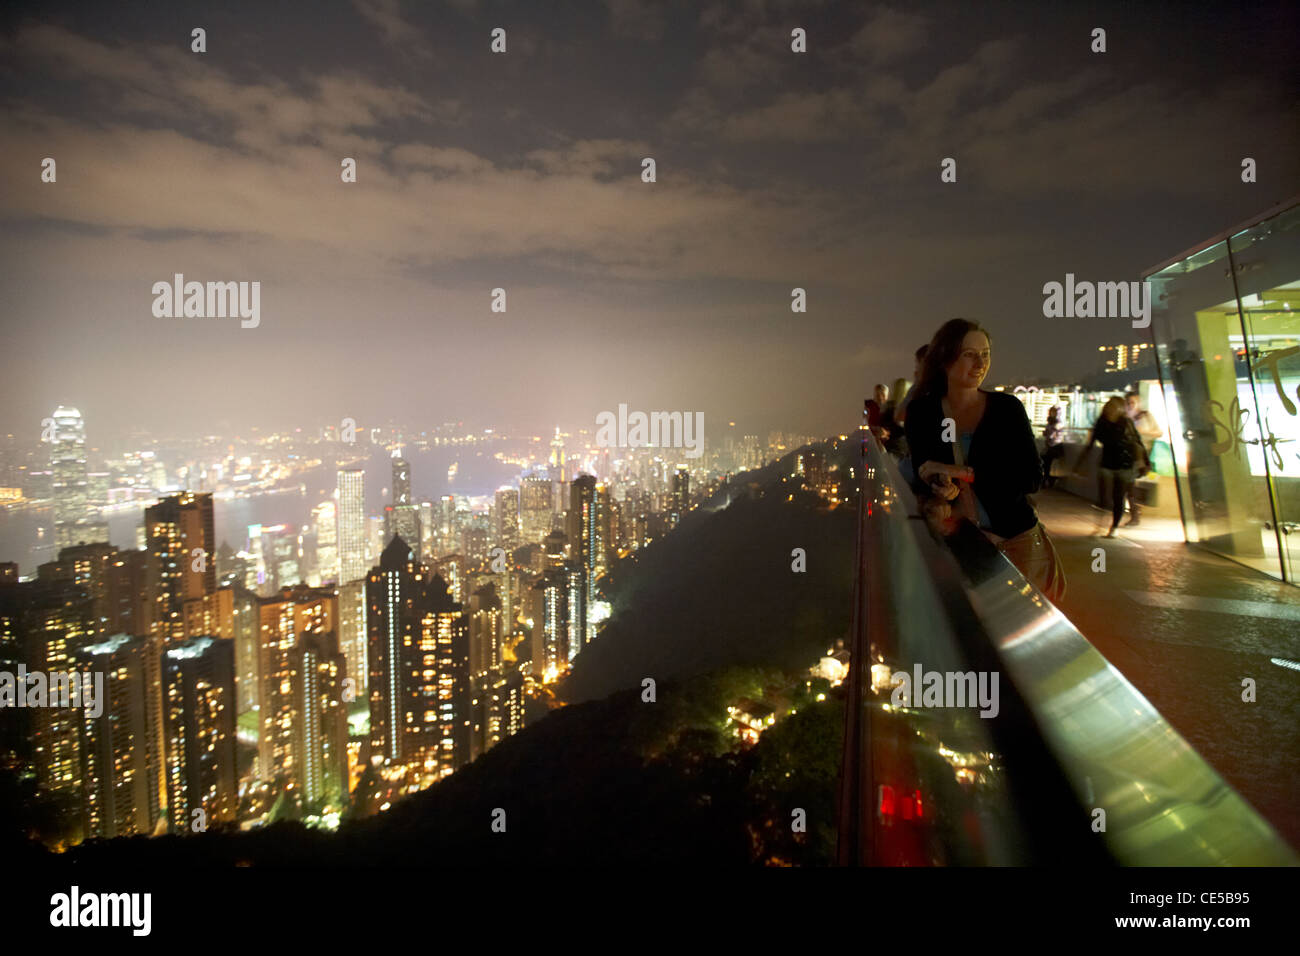 Portrait féminin sur la terrasse sky touristique sur le pic de Hong Kong Hong Kong Chine Asie Banque D'Images